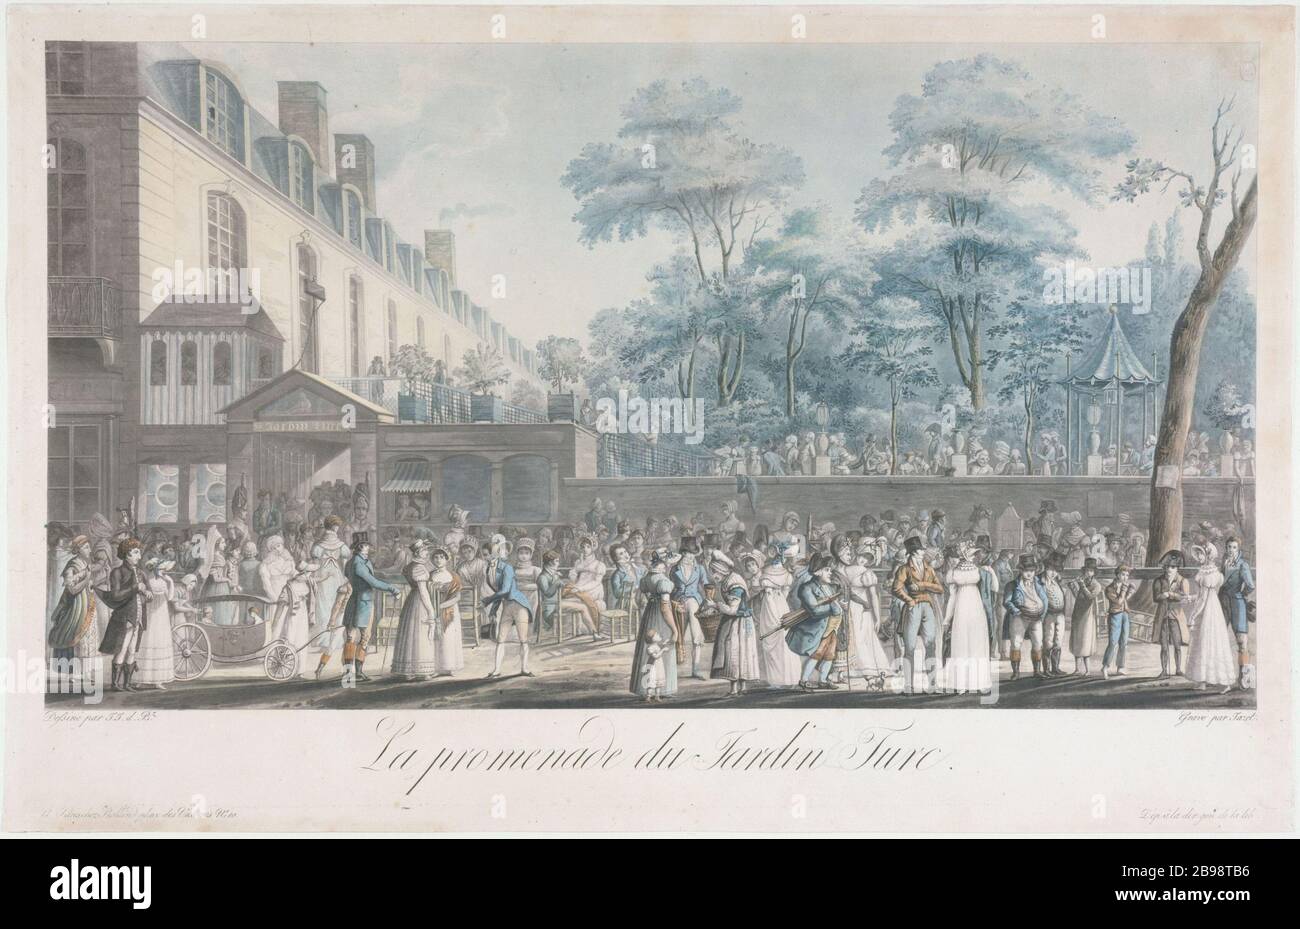 PROMENEZ-VOUS DANS LE JARDIN TURC Jean-Pierre-Marie Jazet (1788-1871). 'La Promenade du jardin Turc' en 1812. Gravité. Paris, musée Carnavalet. Banque D'Images